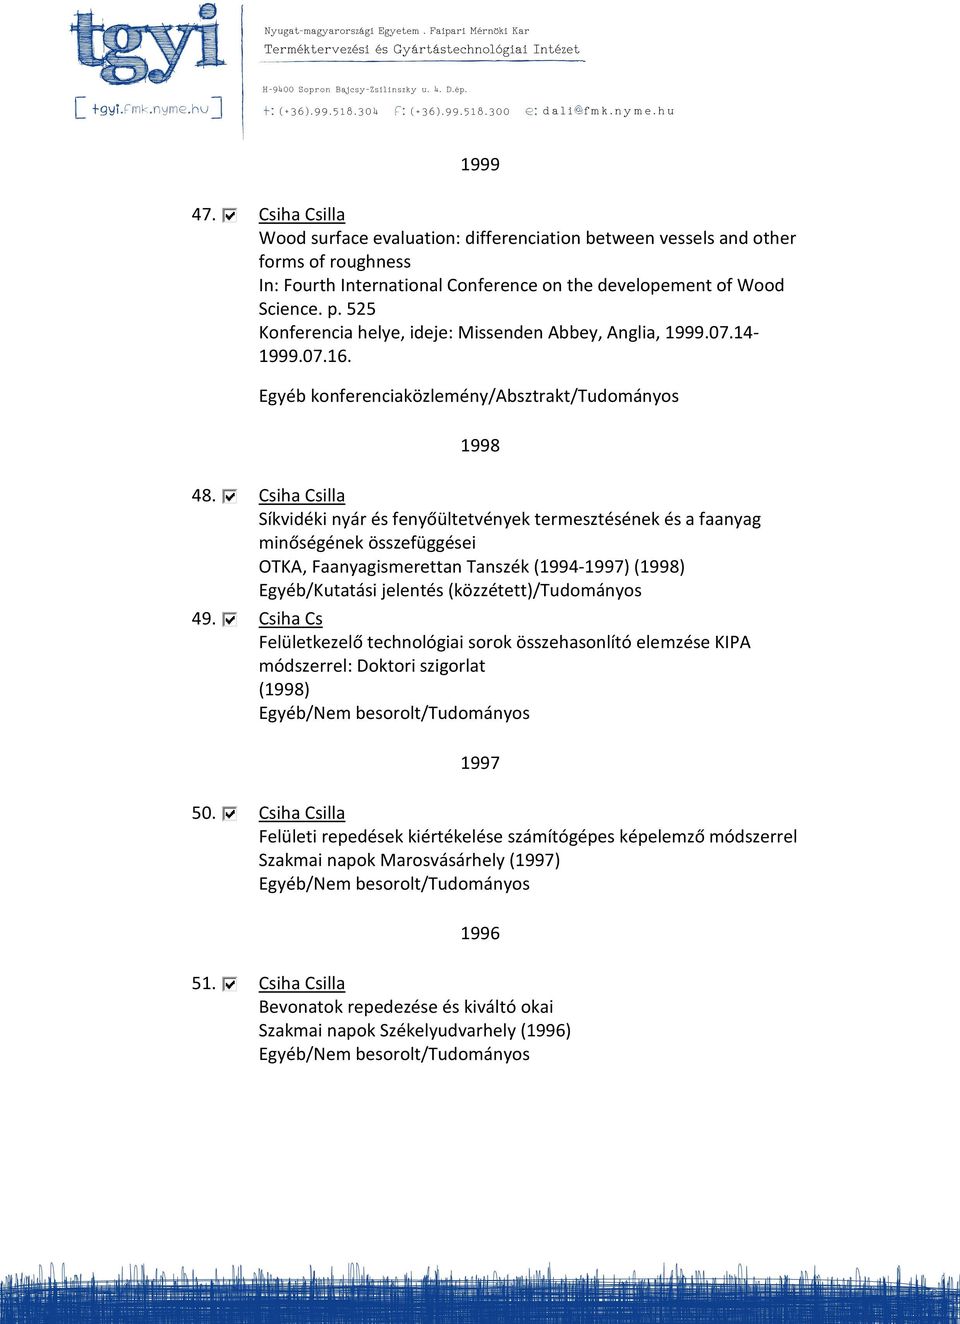 Csiha Csilla Síkvidéki nyár és fenyőültetvények termesztésének és a faanyag minőségének összefüggései OTKA, Faanyagismerettan Tanszék (1994-1997) (1998) 49.